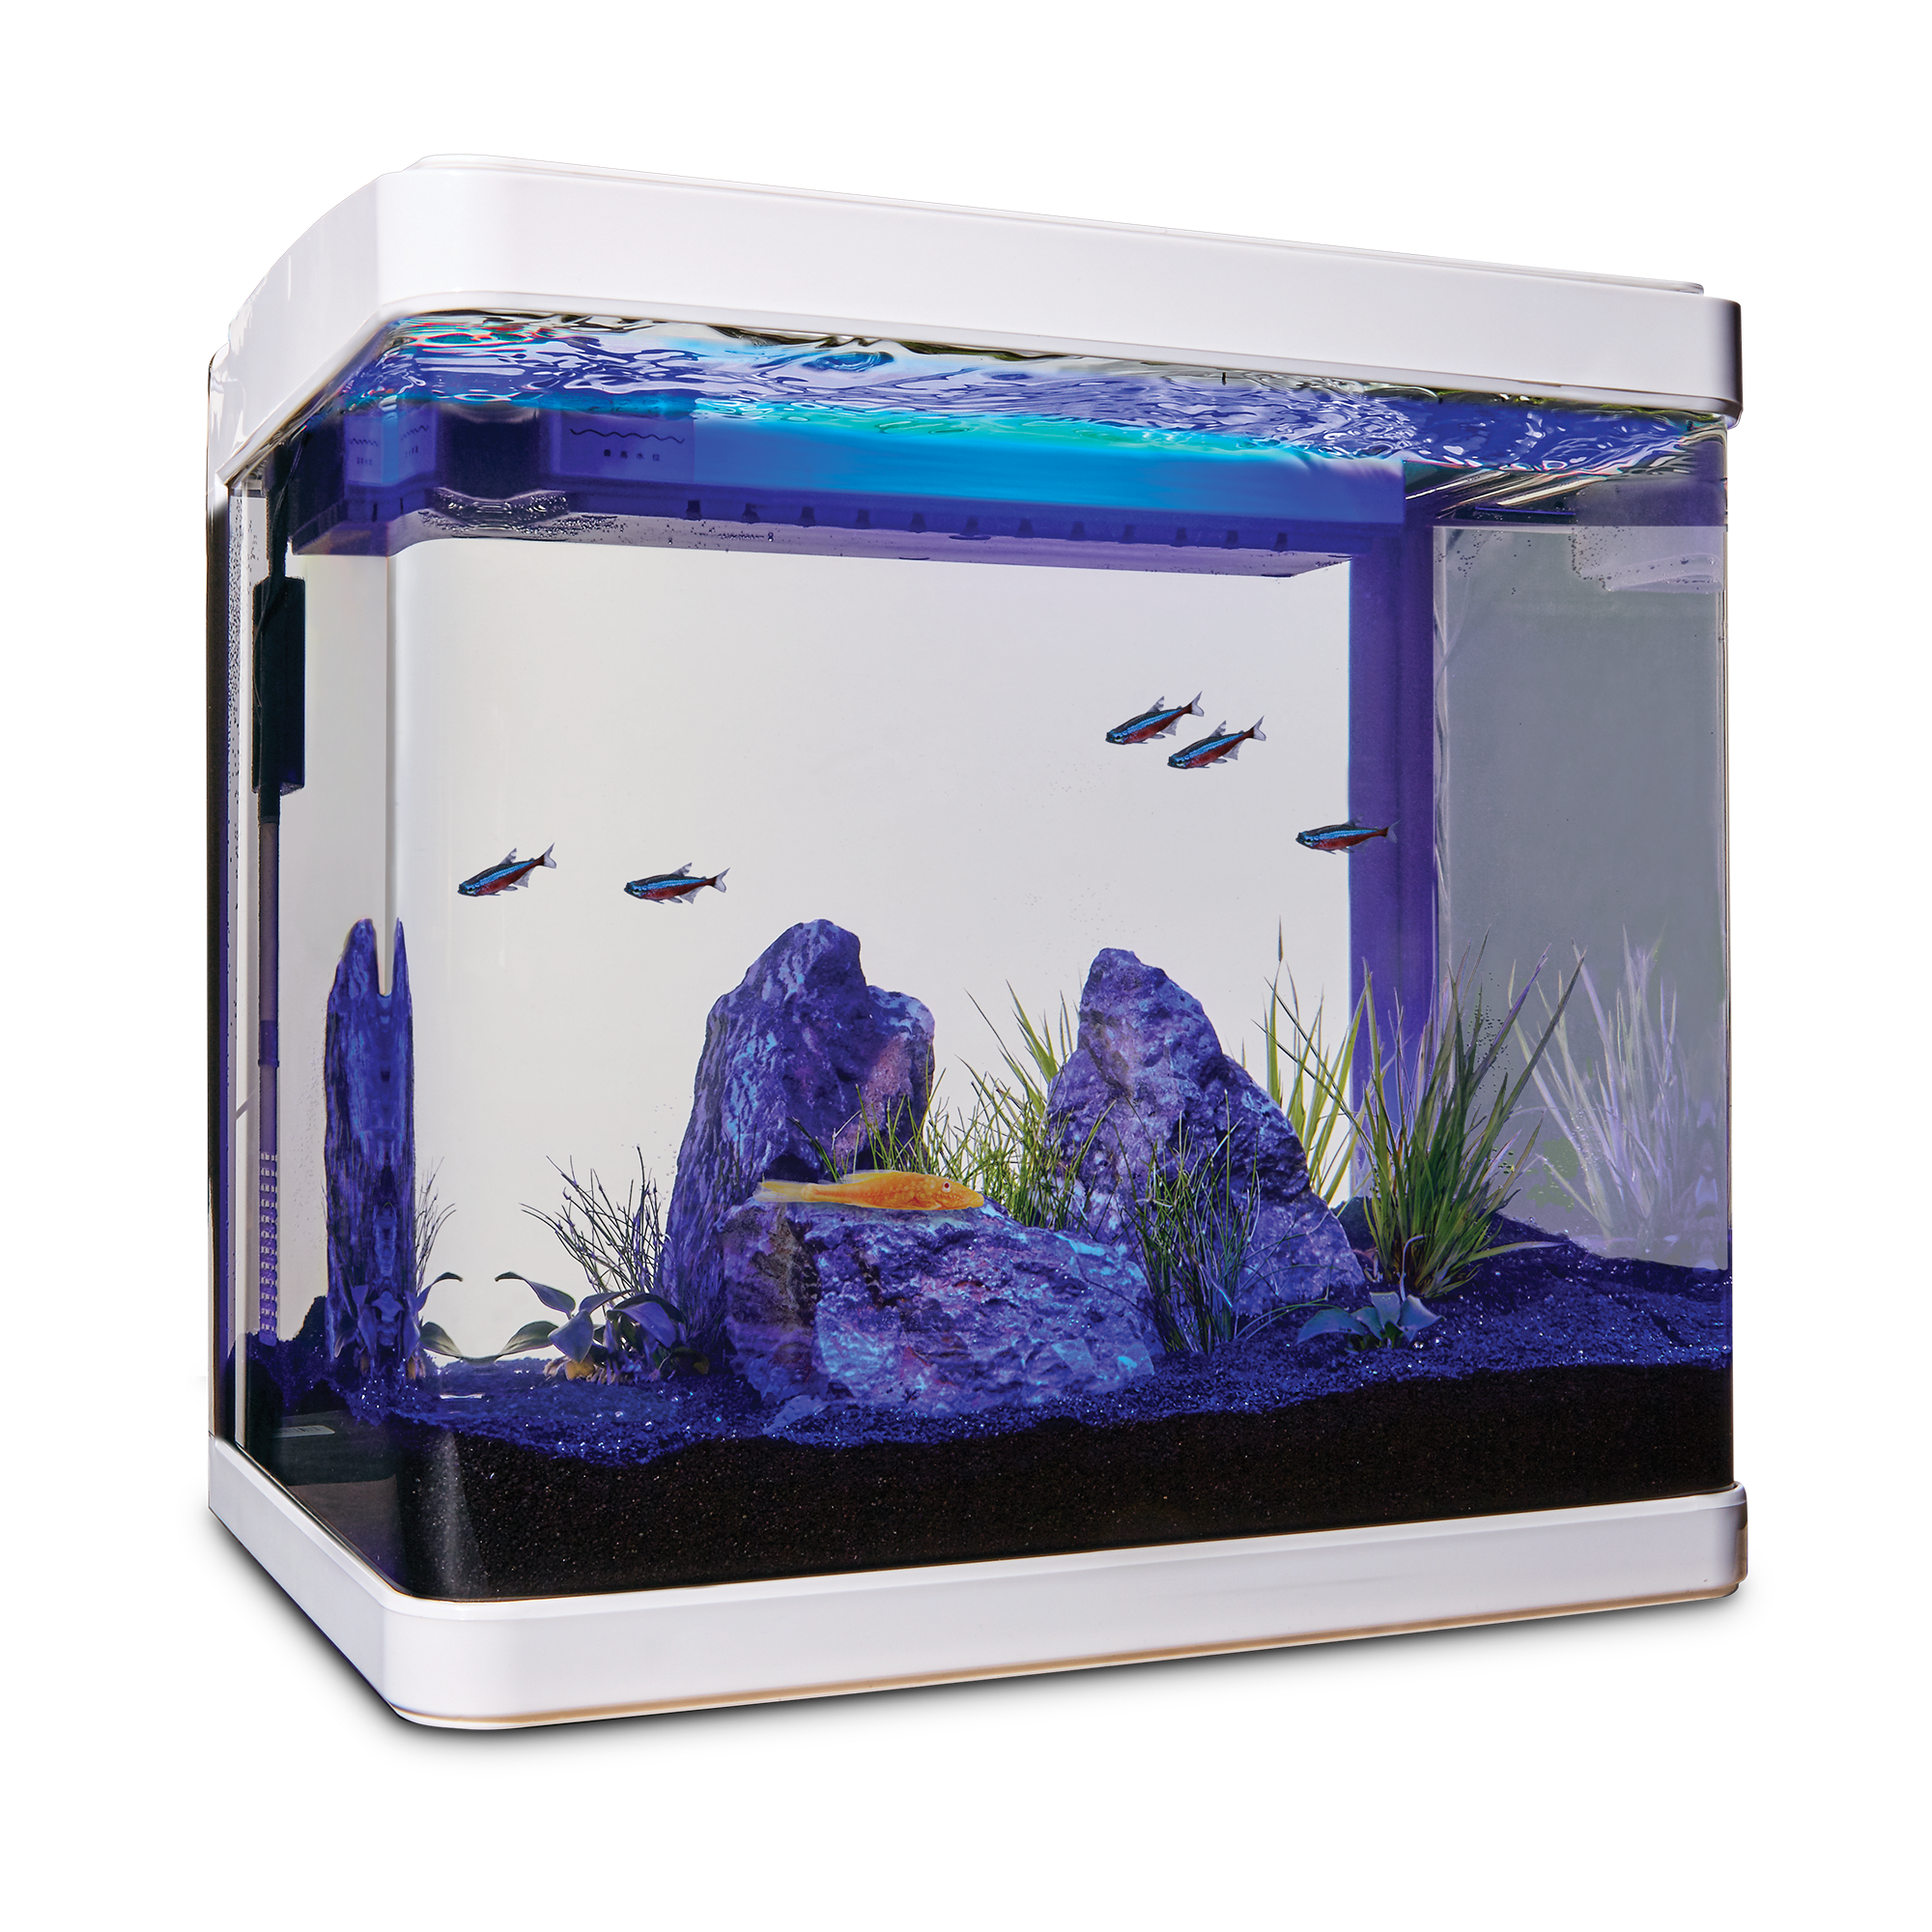 Imagitarium Freshwater Cube Aquarium 